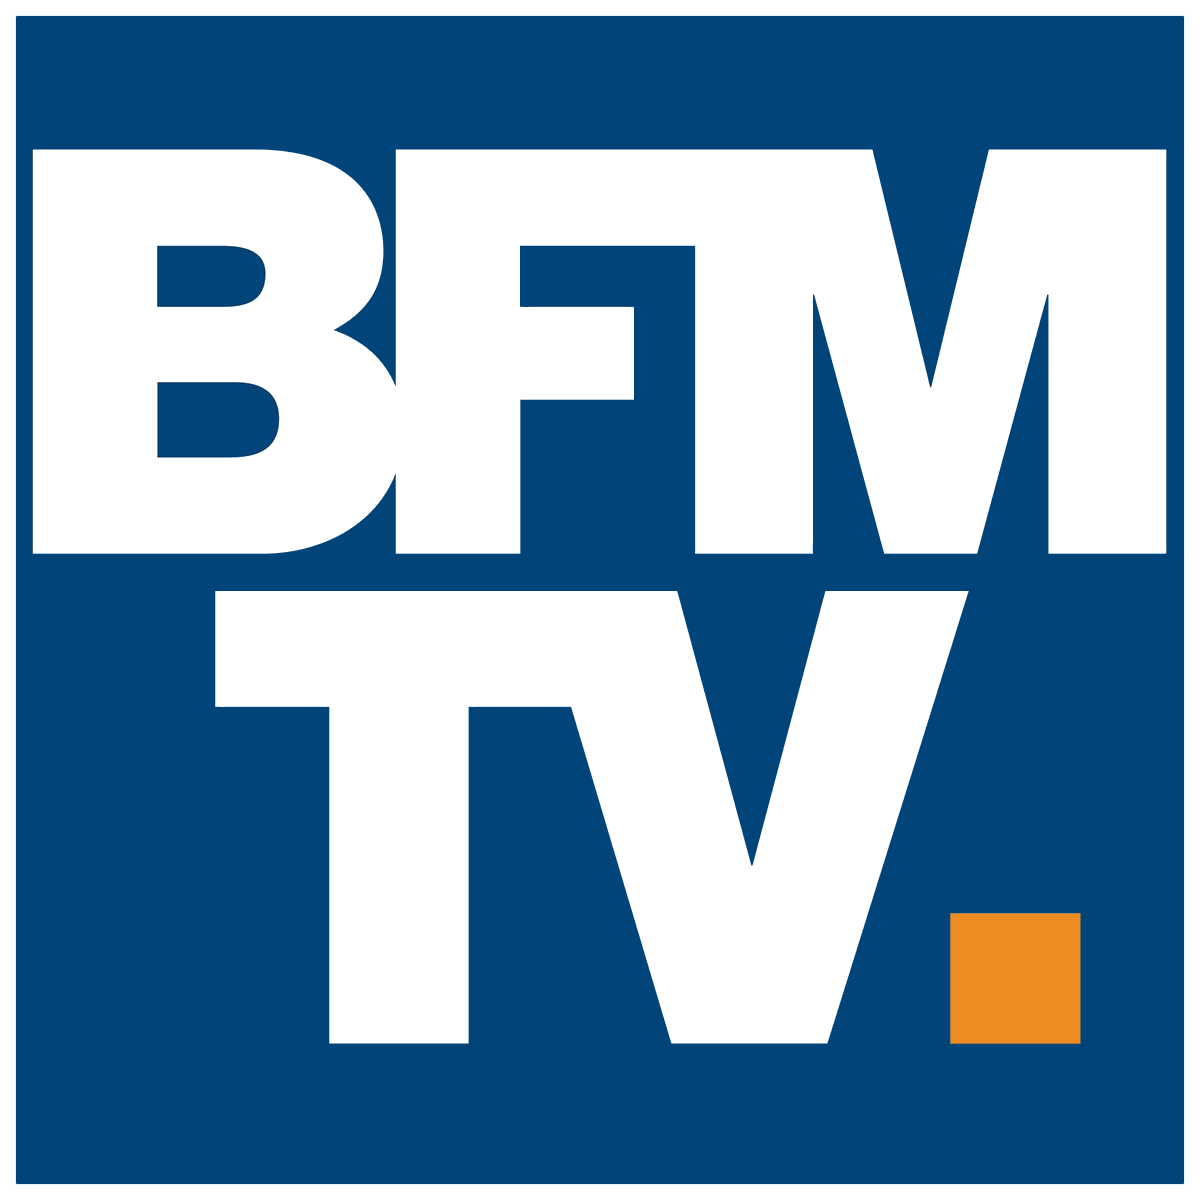 Une innovation pour consommer moins d'énergie - Reportage BFM TV